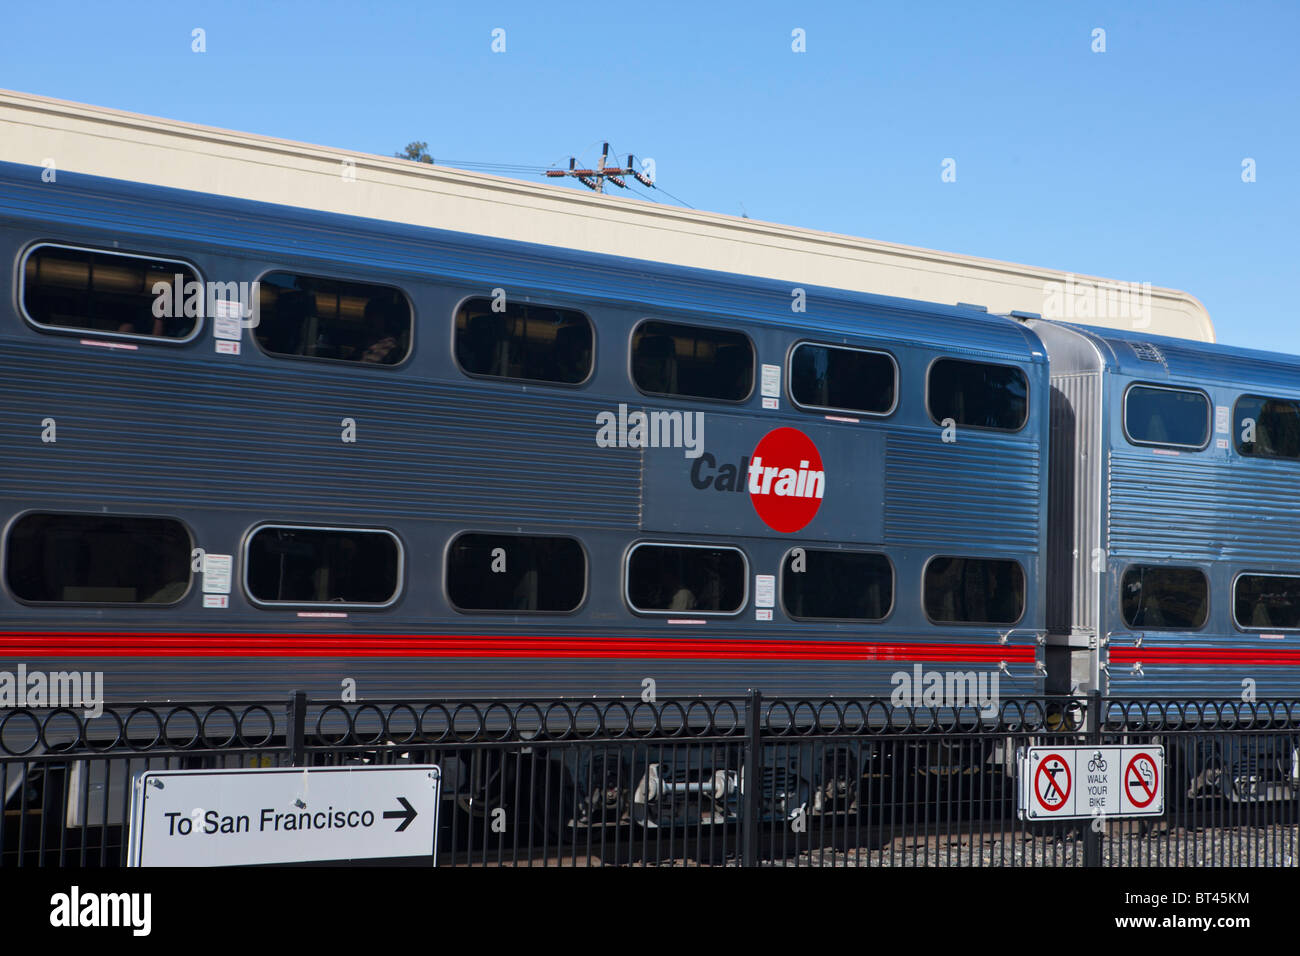 Caltrain double decker passenger rail car, Palo Alto CalTrain Station, Palo Alto, California, United States of America Stock Photo